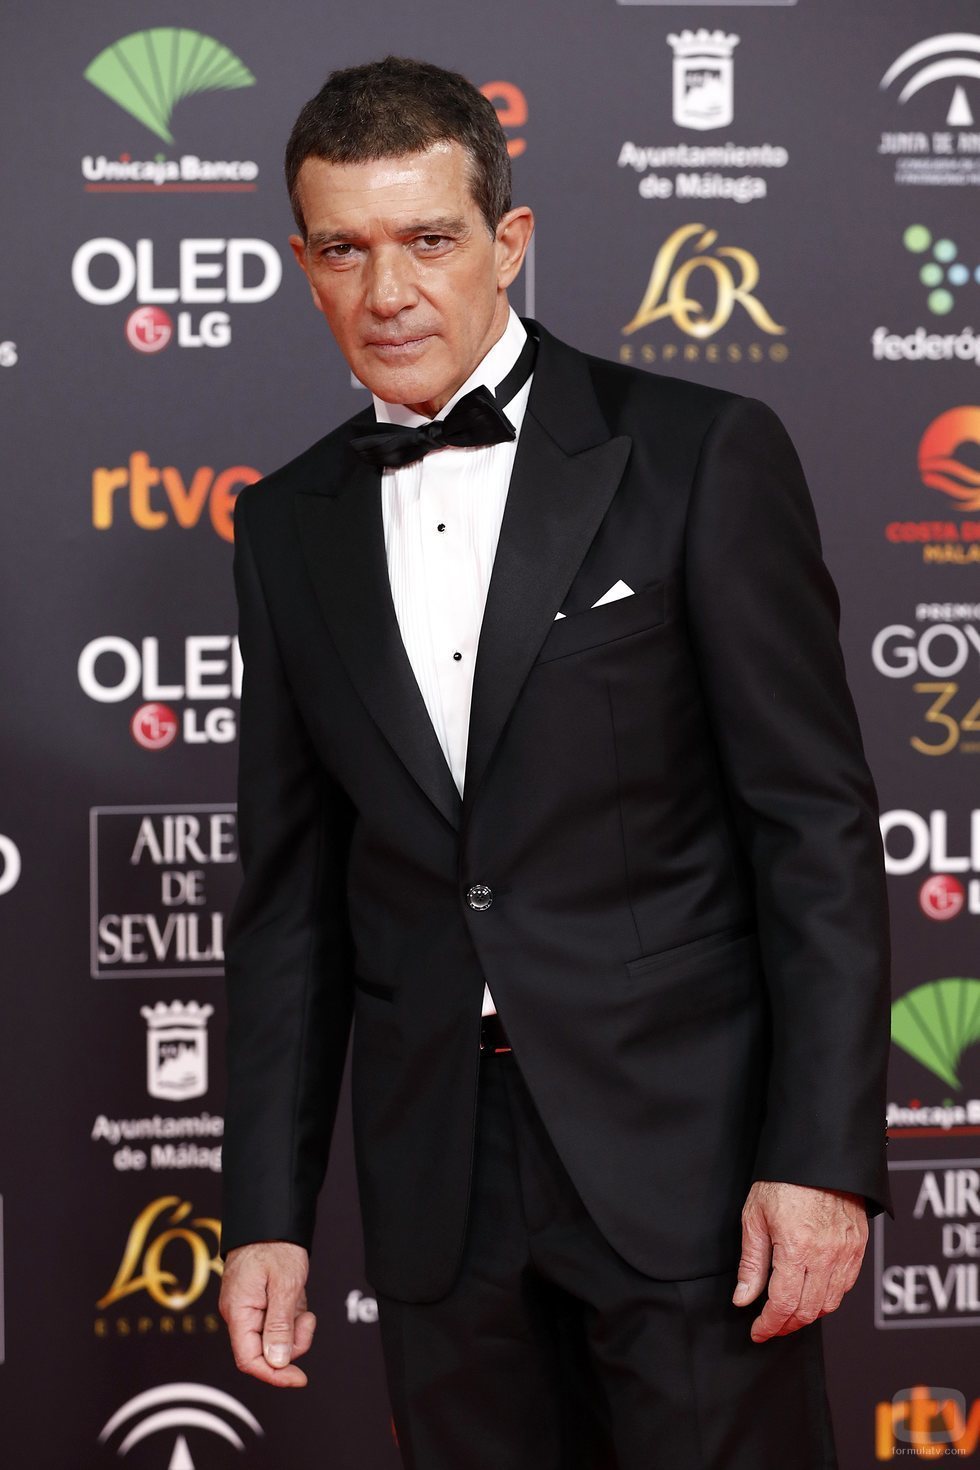 Antonio Banderas en la alfombra roja de los Premios Goya 2020